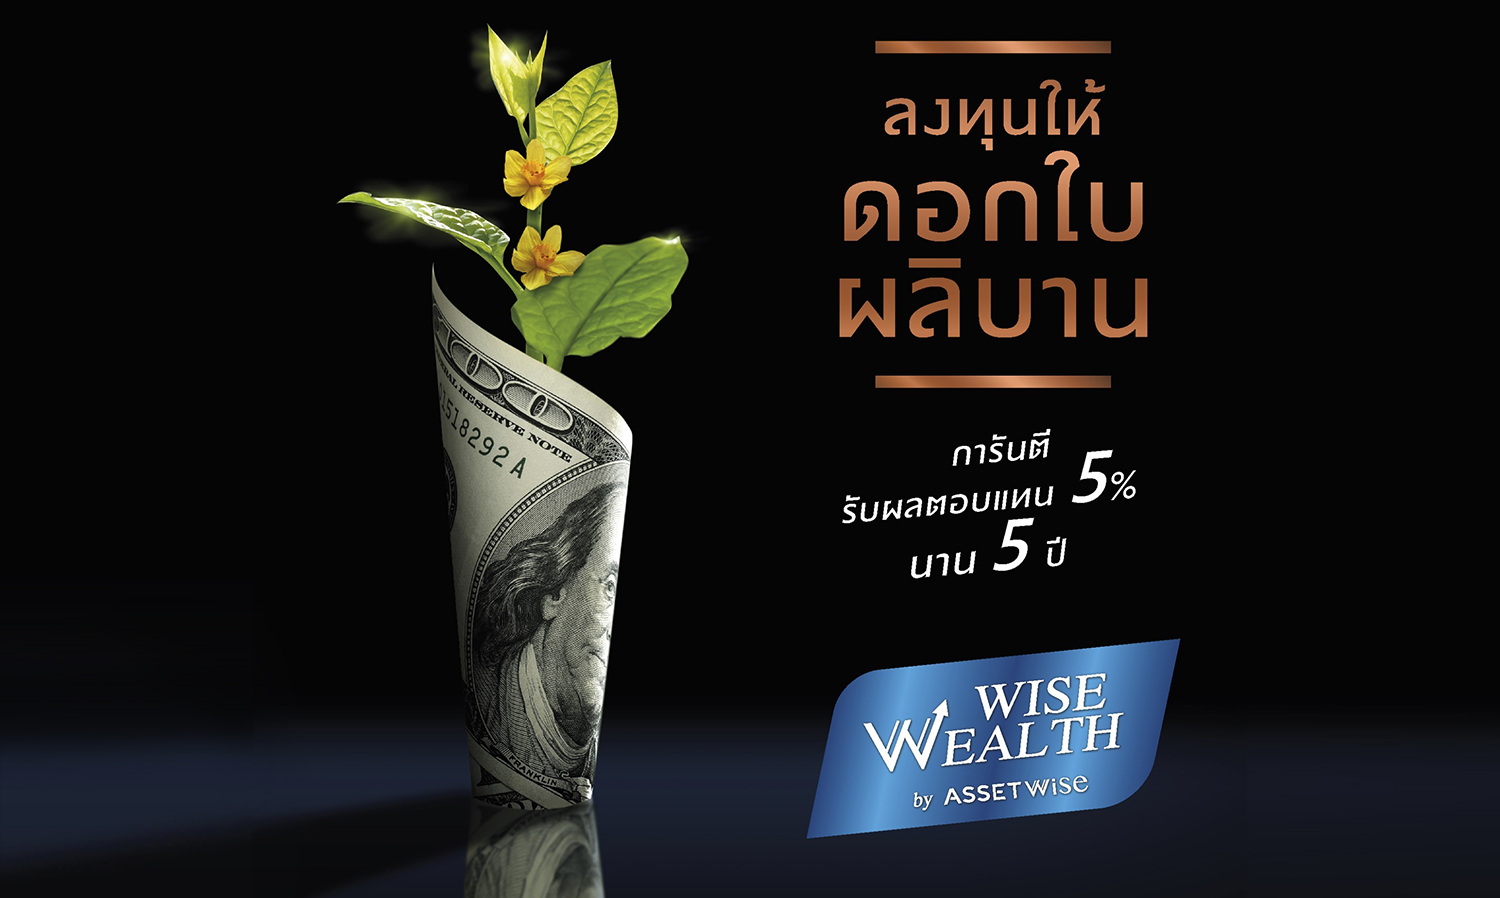 ASW เปิดตัว Wise Wealth Program รับเทรนด์ลงทุนอสังหาฯ ขาขึ้น ชูการันตีผลตอบแทน 5% นาน 5 ปี